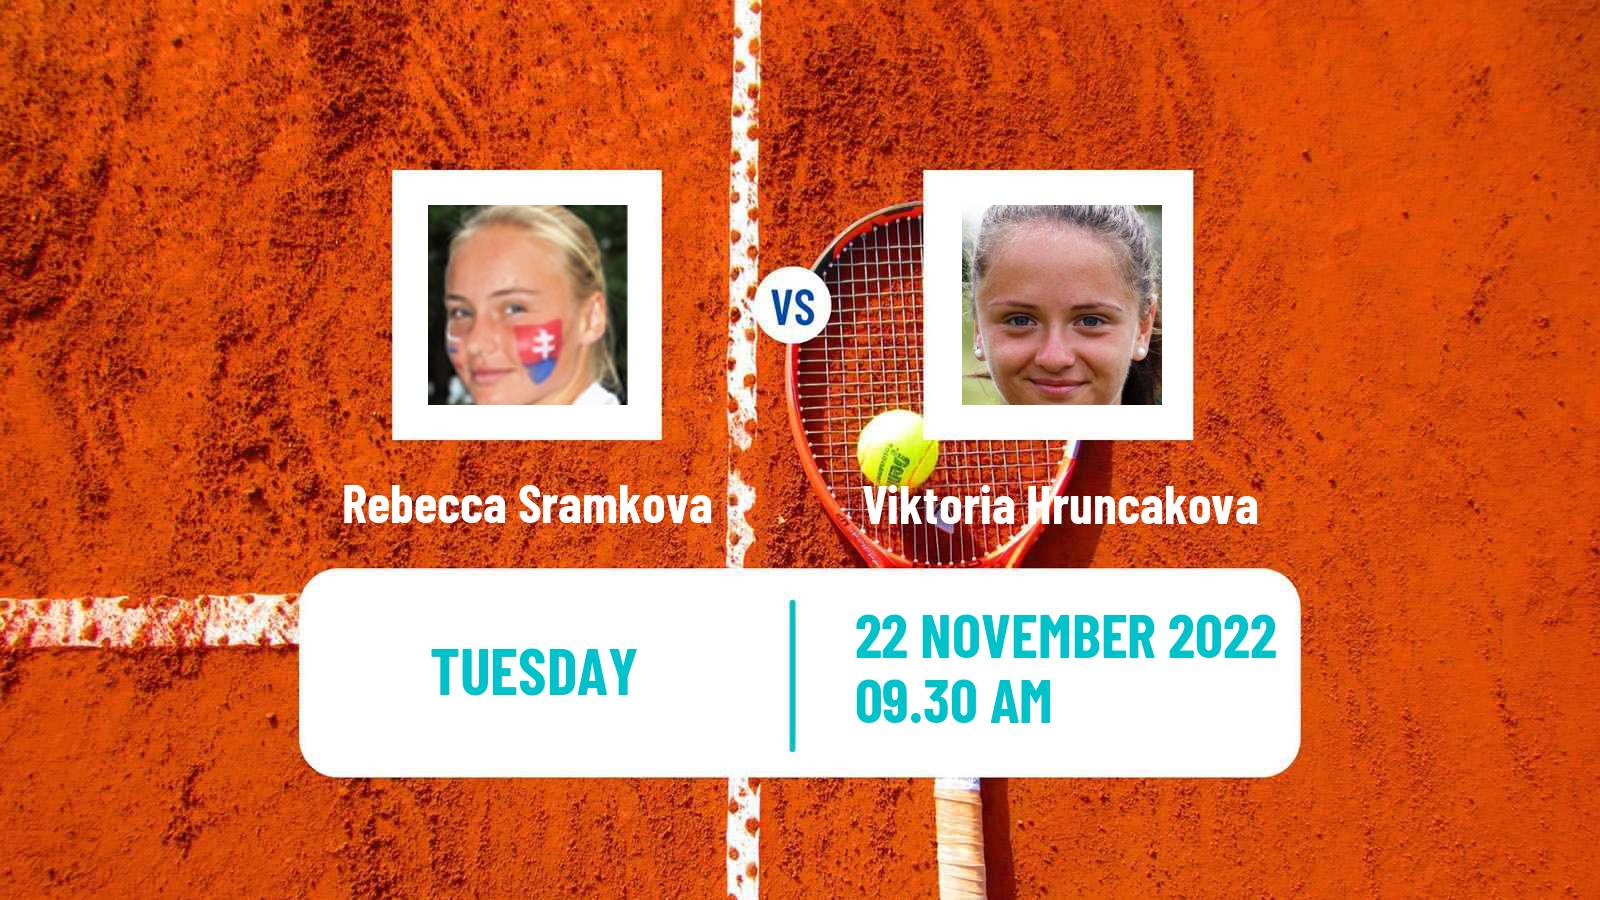 Tennis ITF Tournaments Rebecca Sramkova - Viktoria Hruncakova